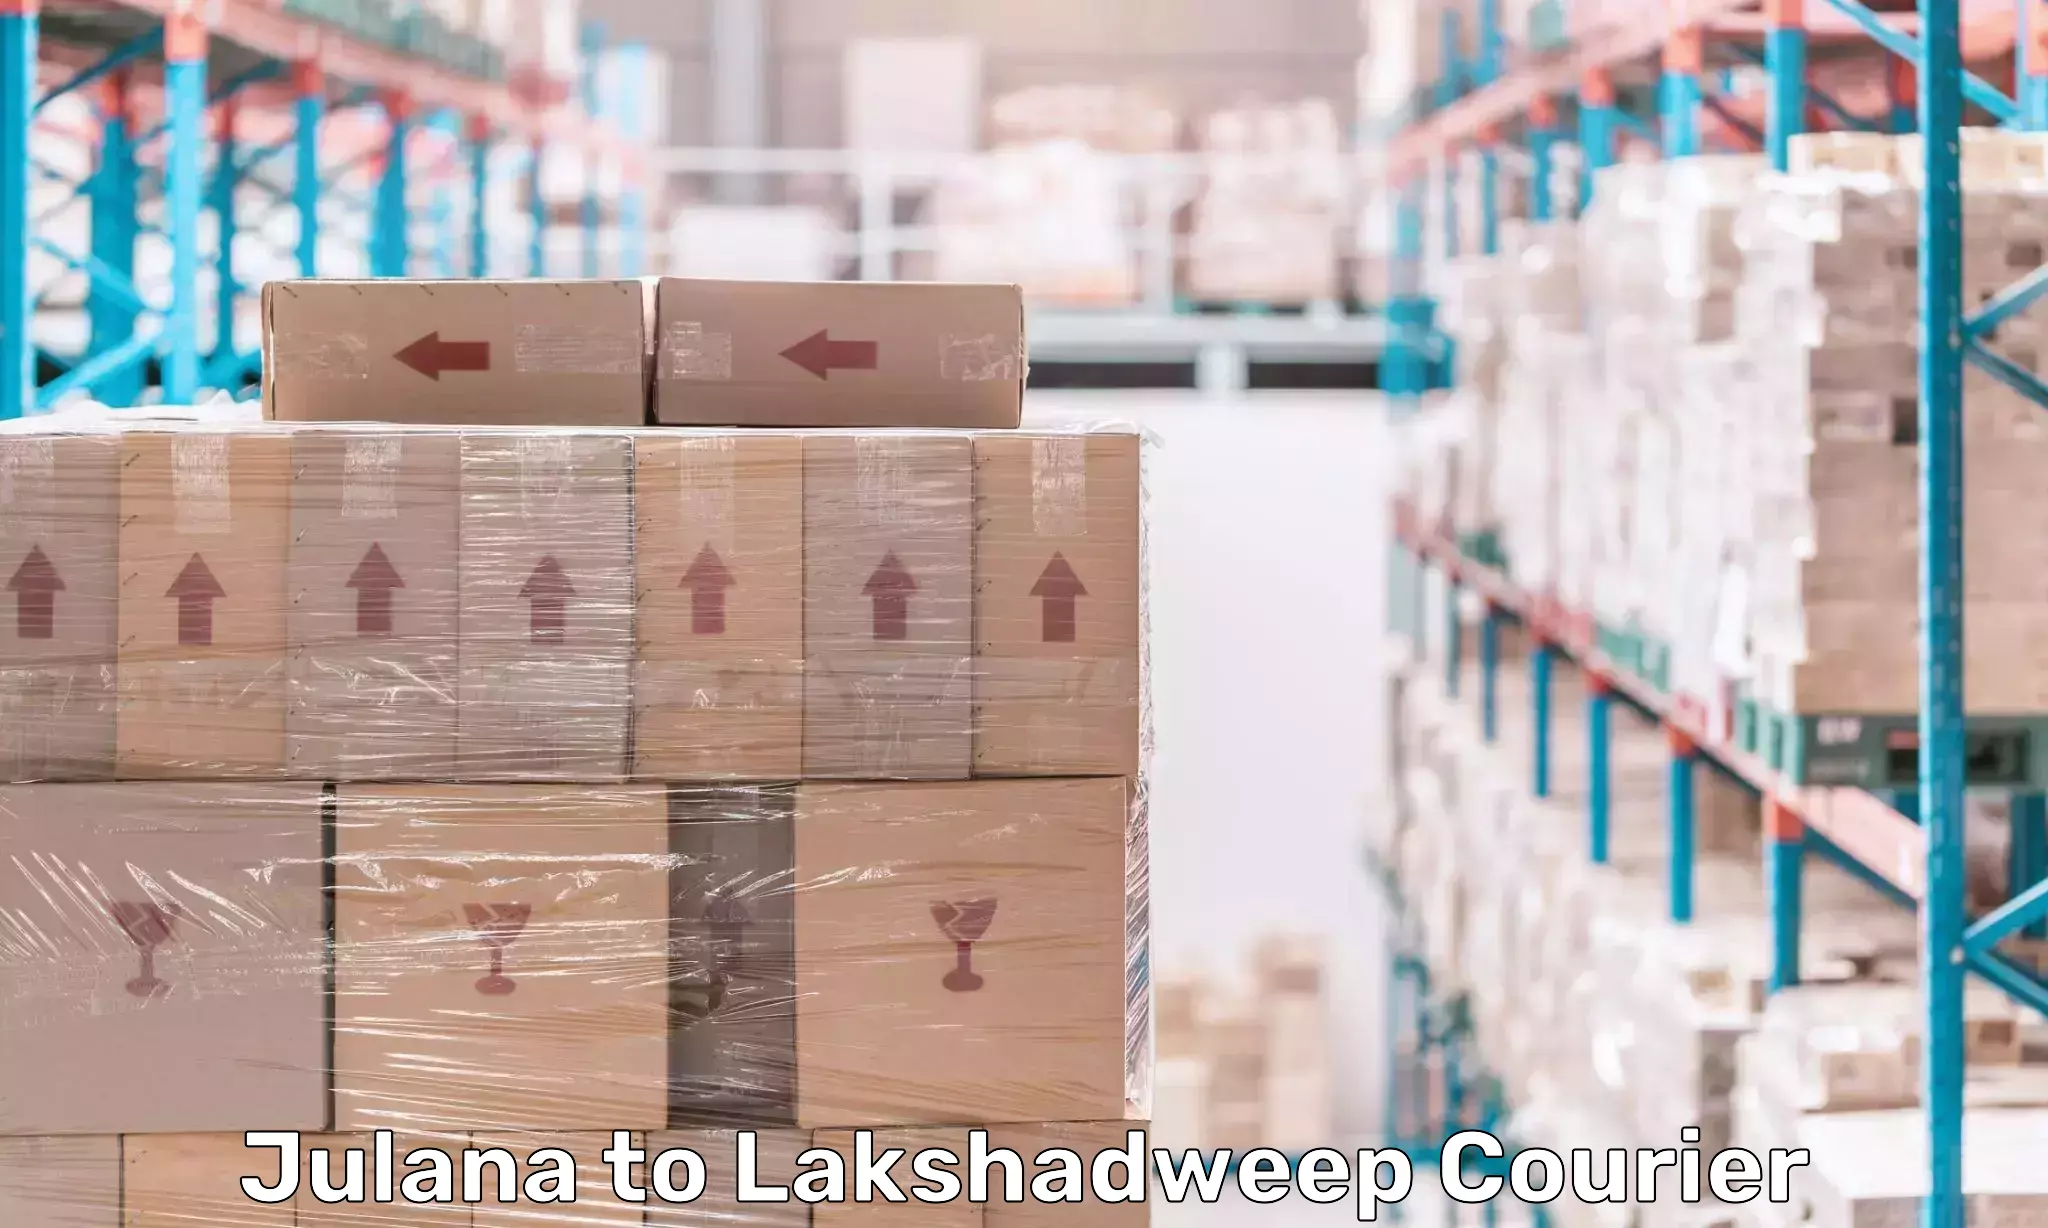 Streamlined logistics management Julana to Lakshadweep